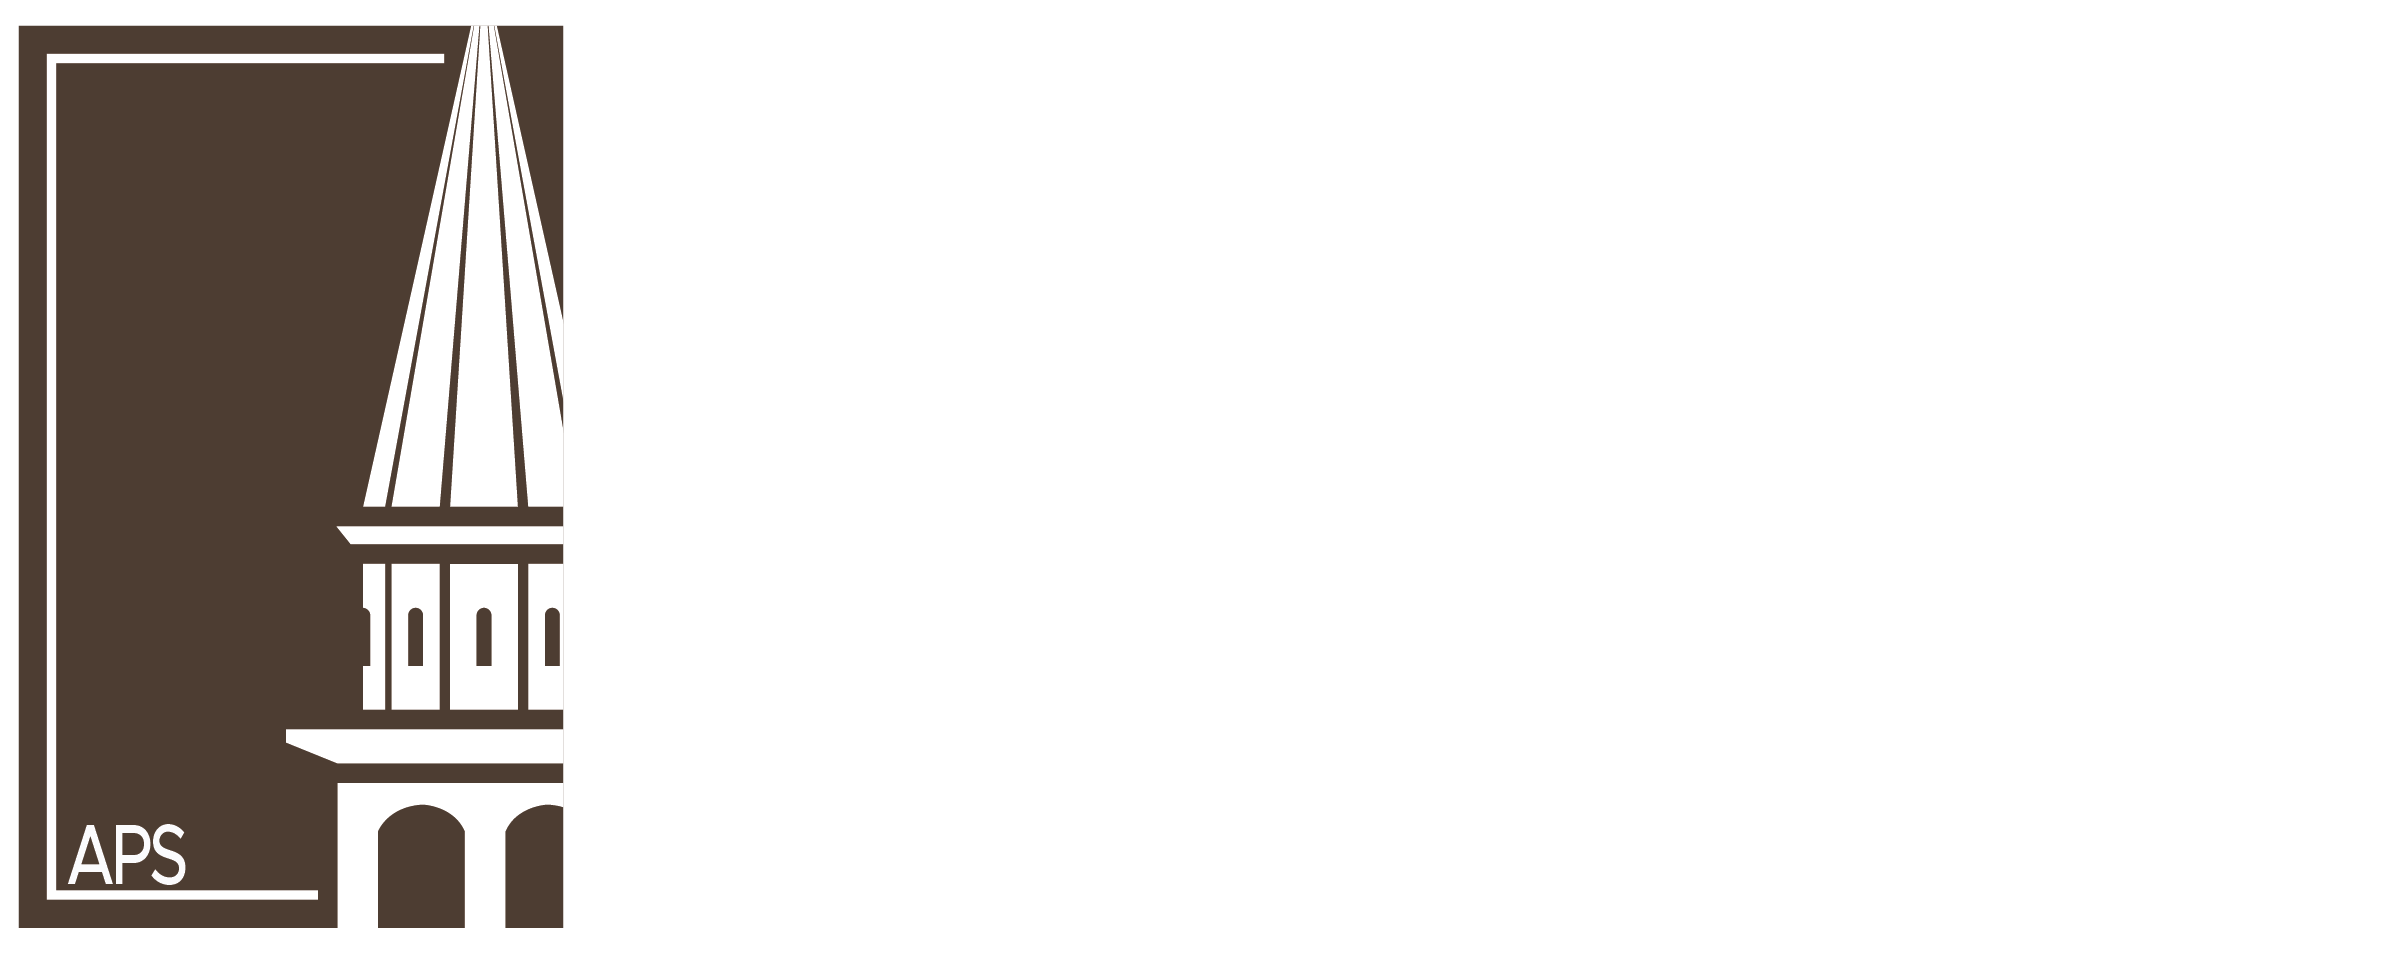 Pro Loco - Ghirano Porte Aperte